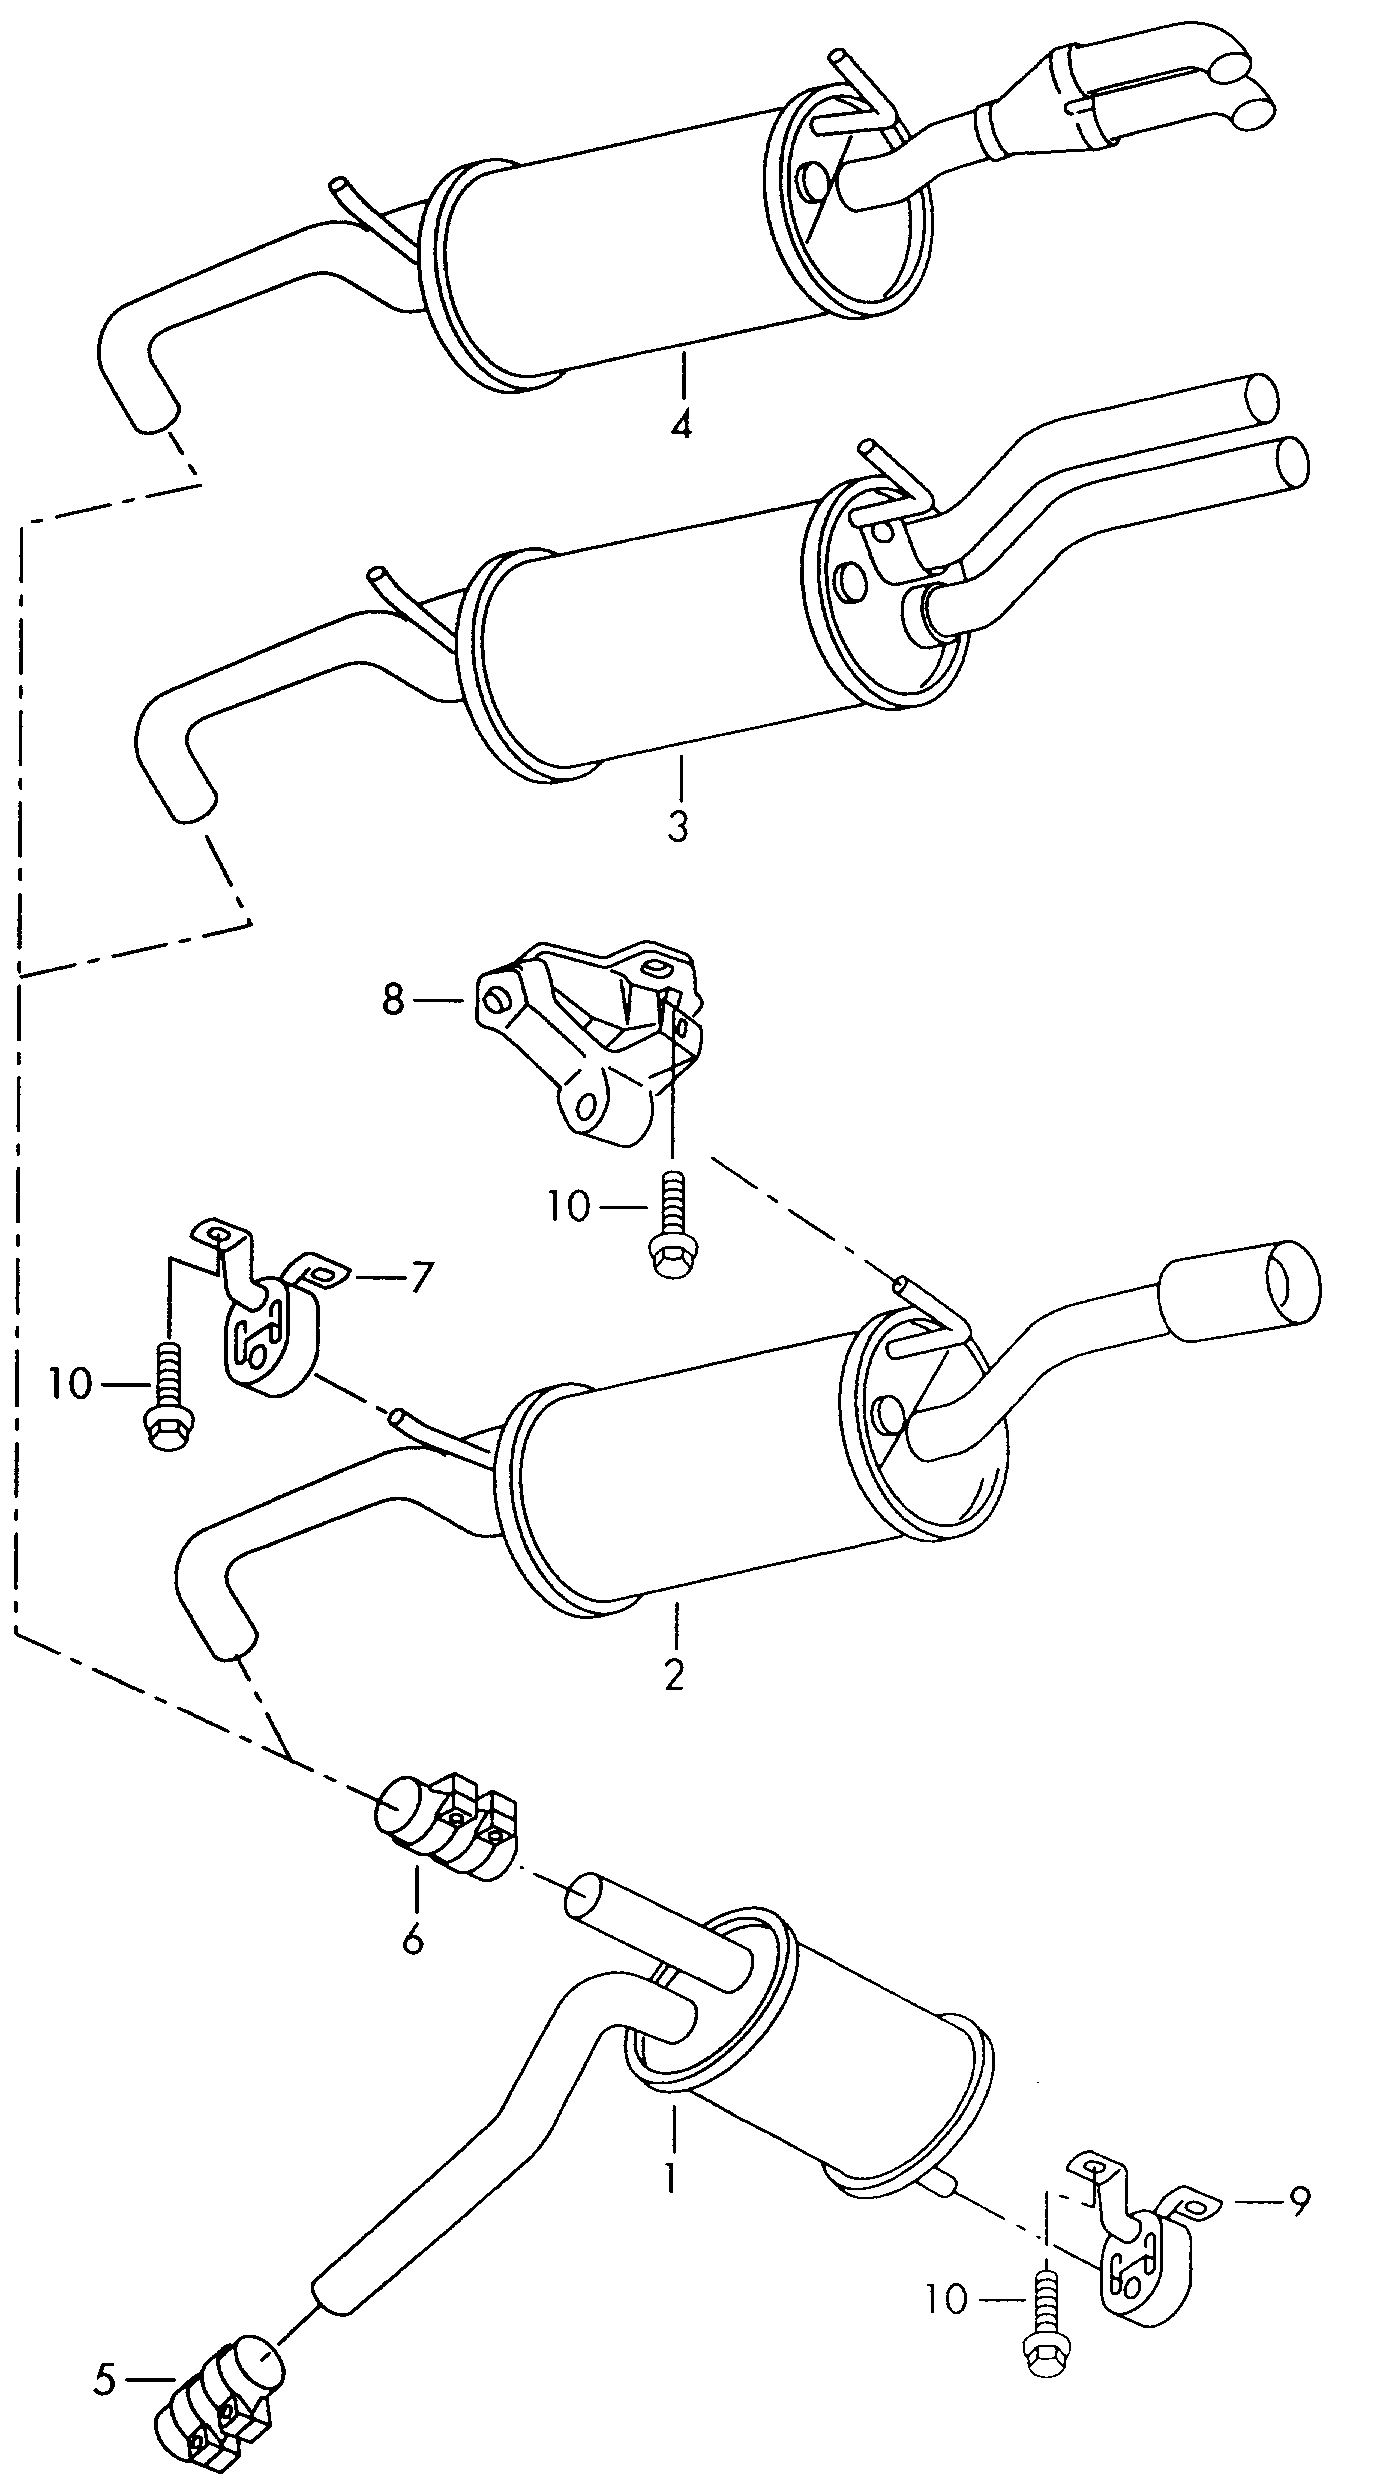 MittelschalldämpferNachschalldämpfer 1,6/1,8Ltr.1,9Ltr. - Audi A4/Avant - a4